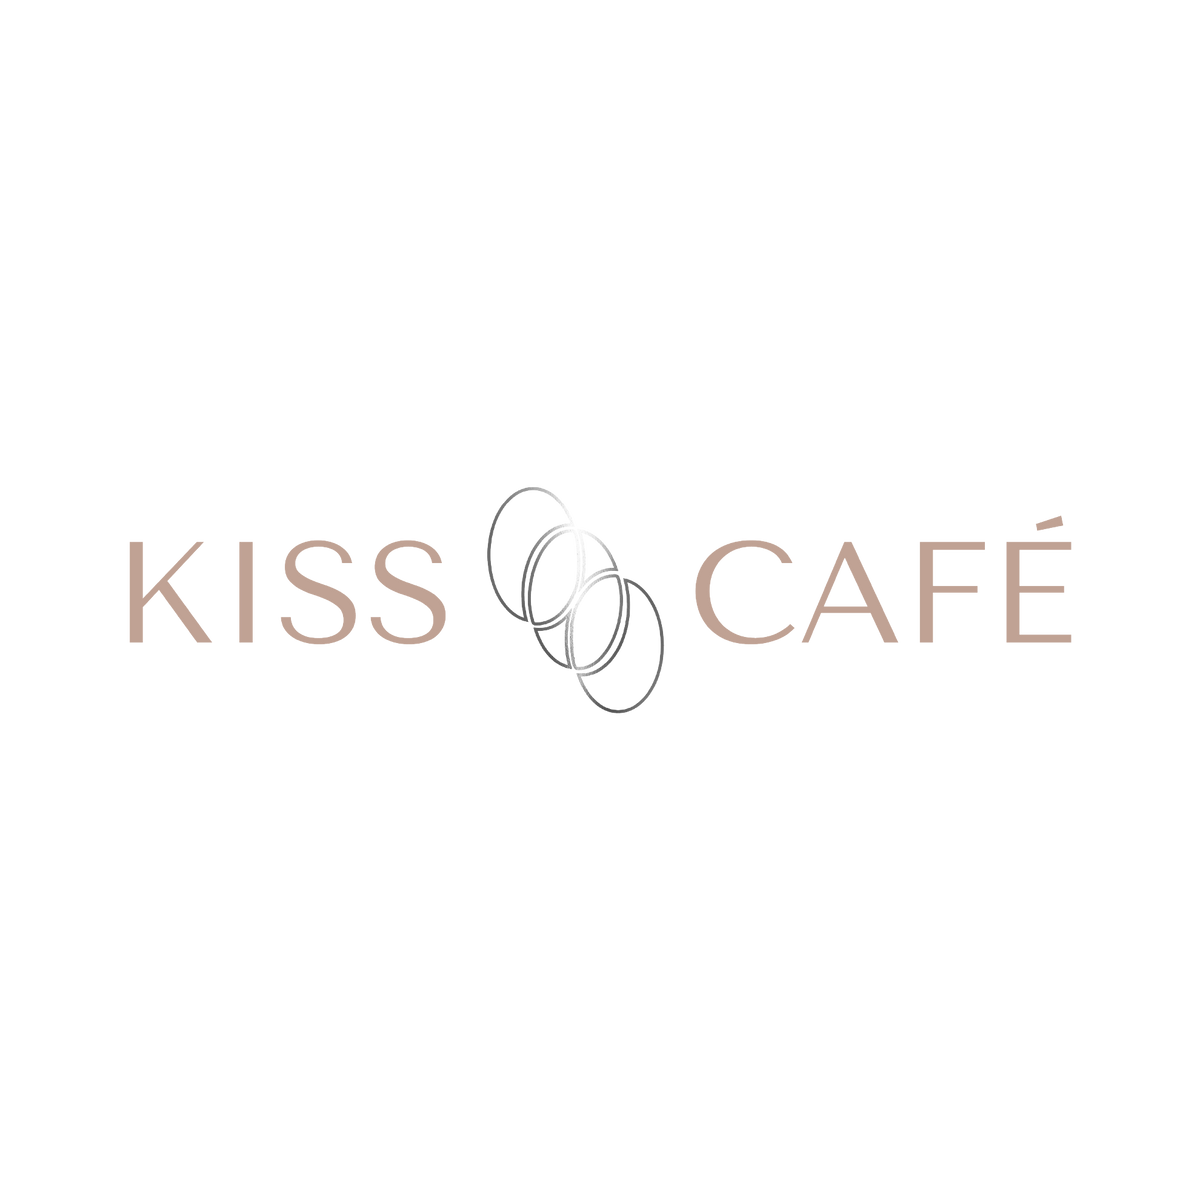 www.kisscafecoffee.com